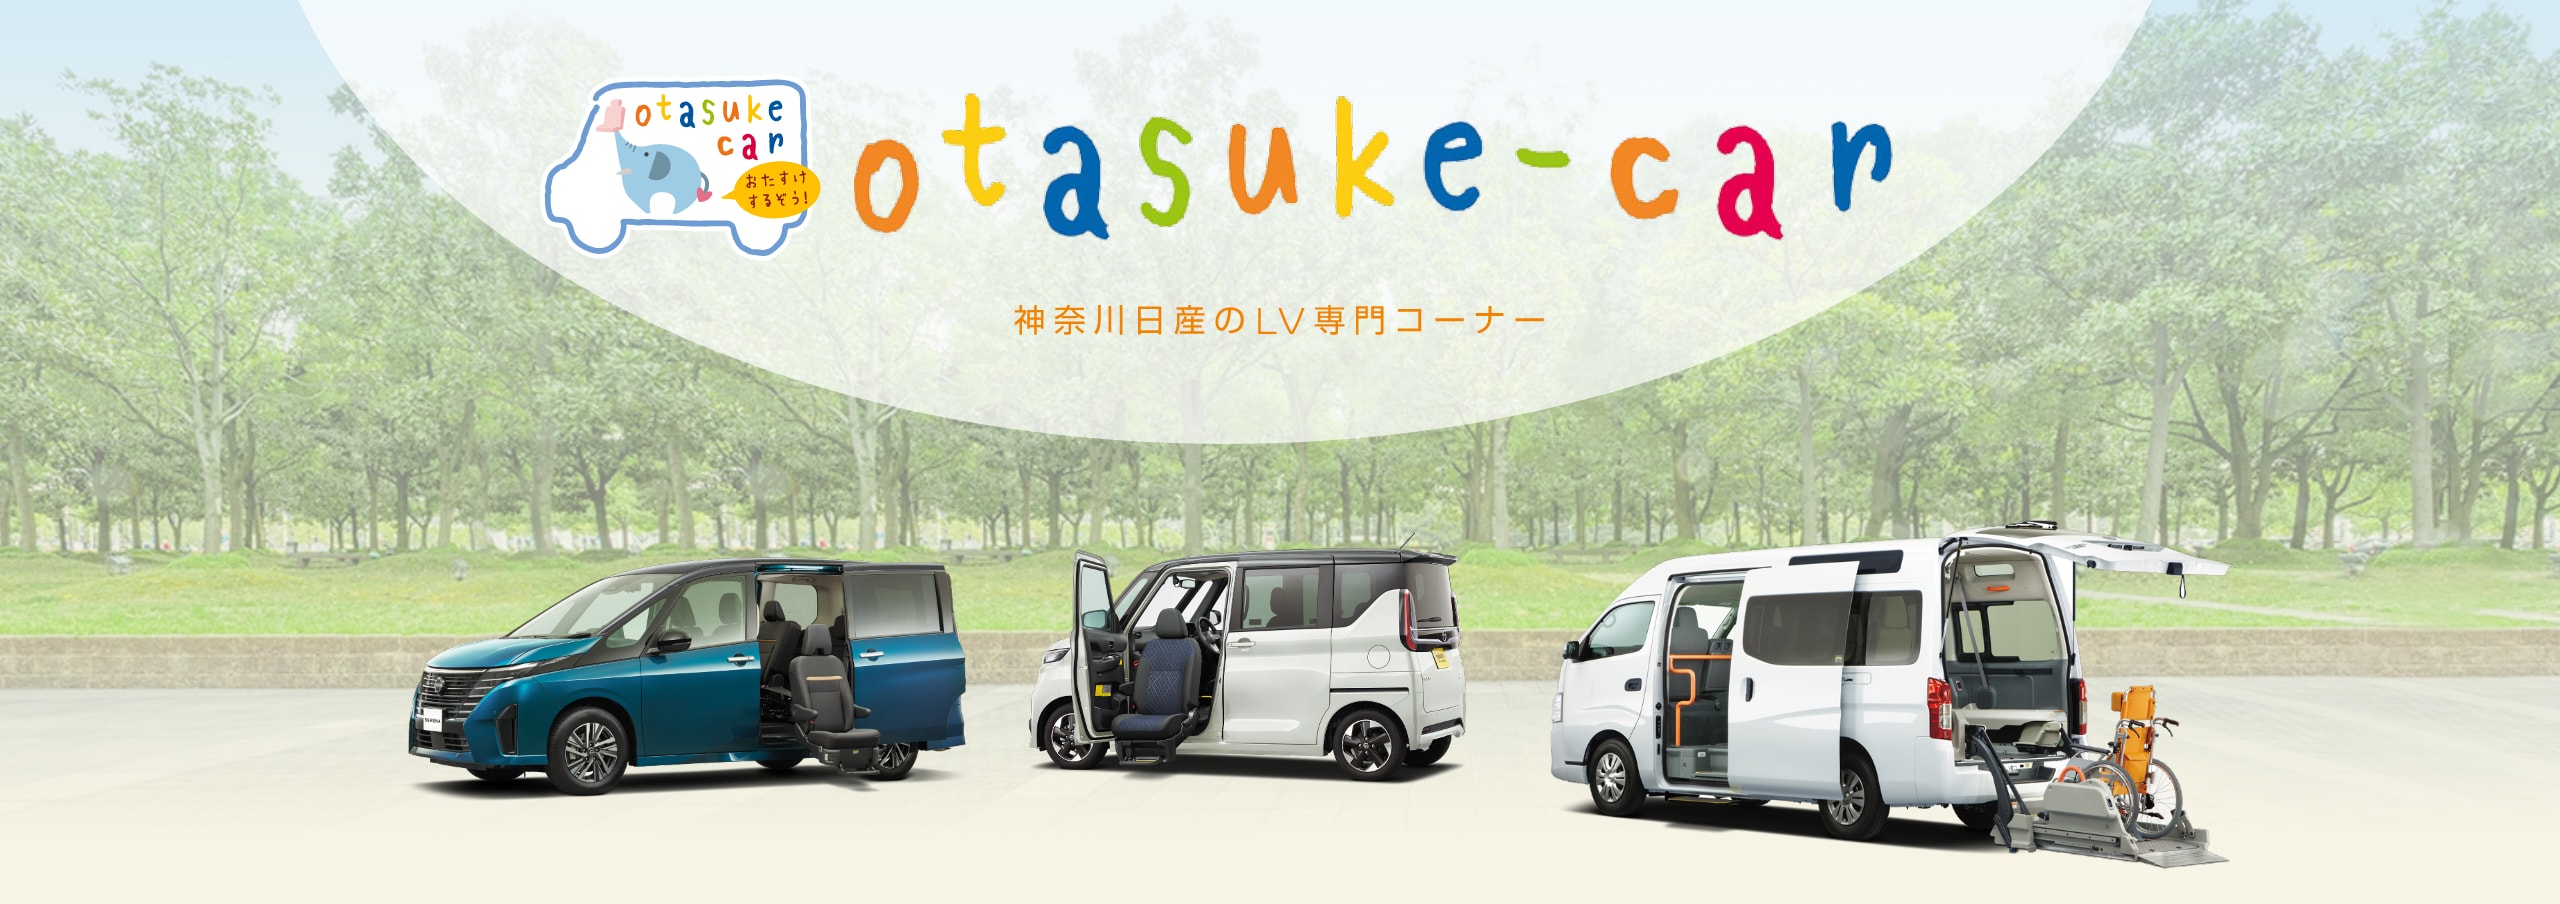 otasuke-car 神奈川日産のLV専門コーナー